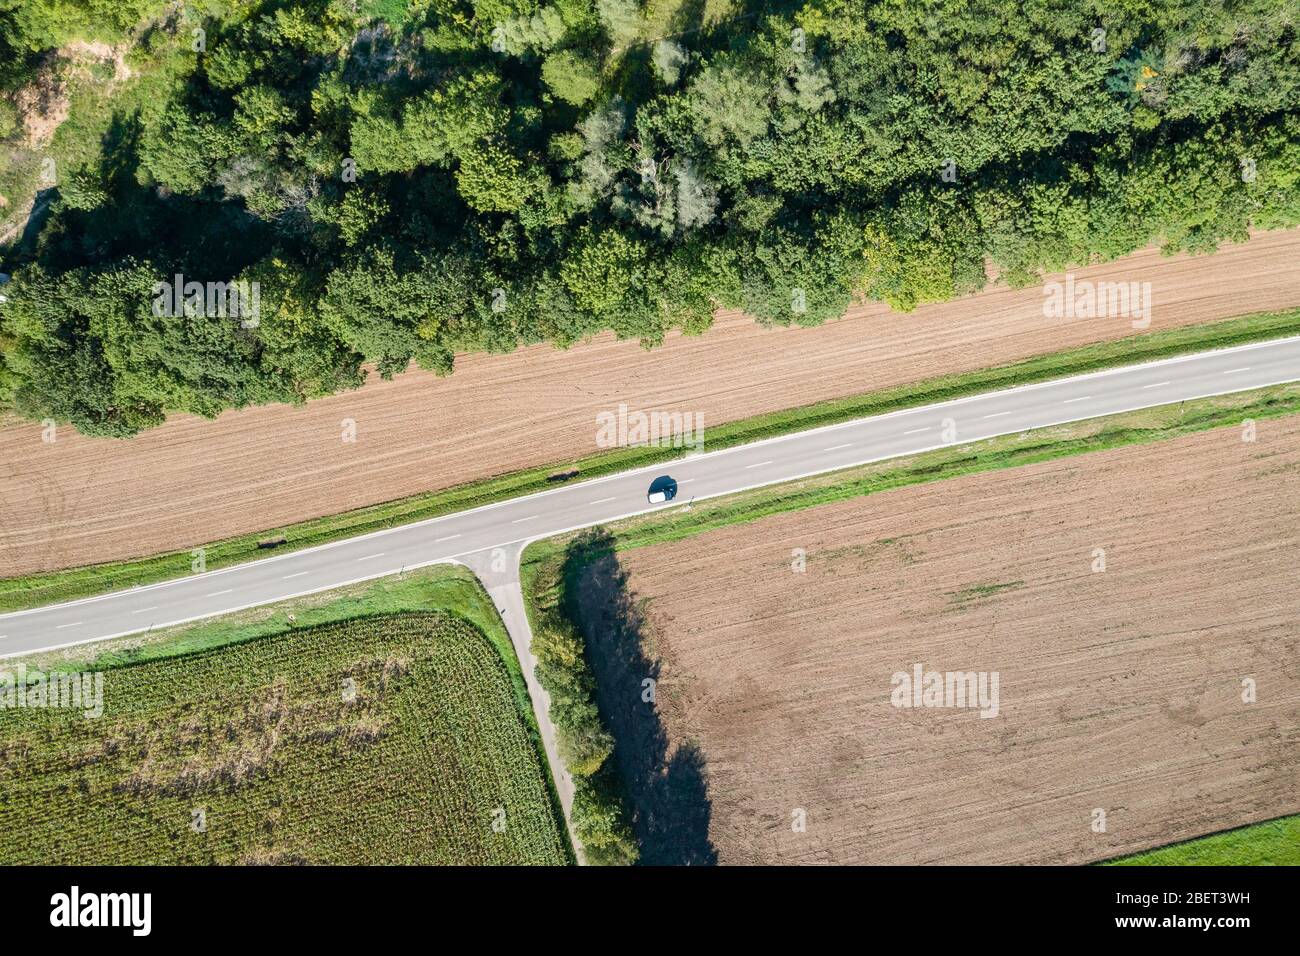 Luftaufnahme einer Landstraße mit Abzweigung und Fahrzeug Foto de stock